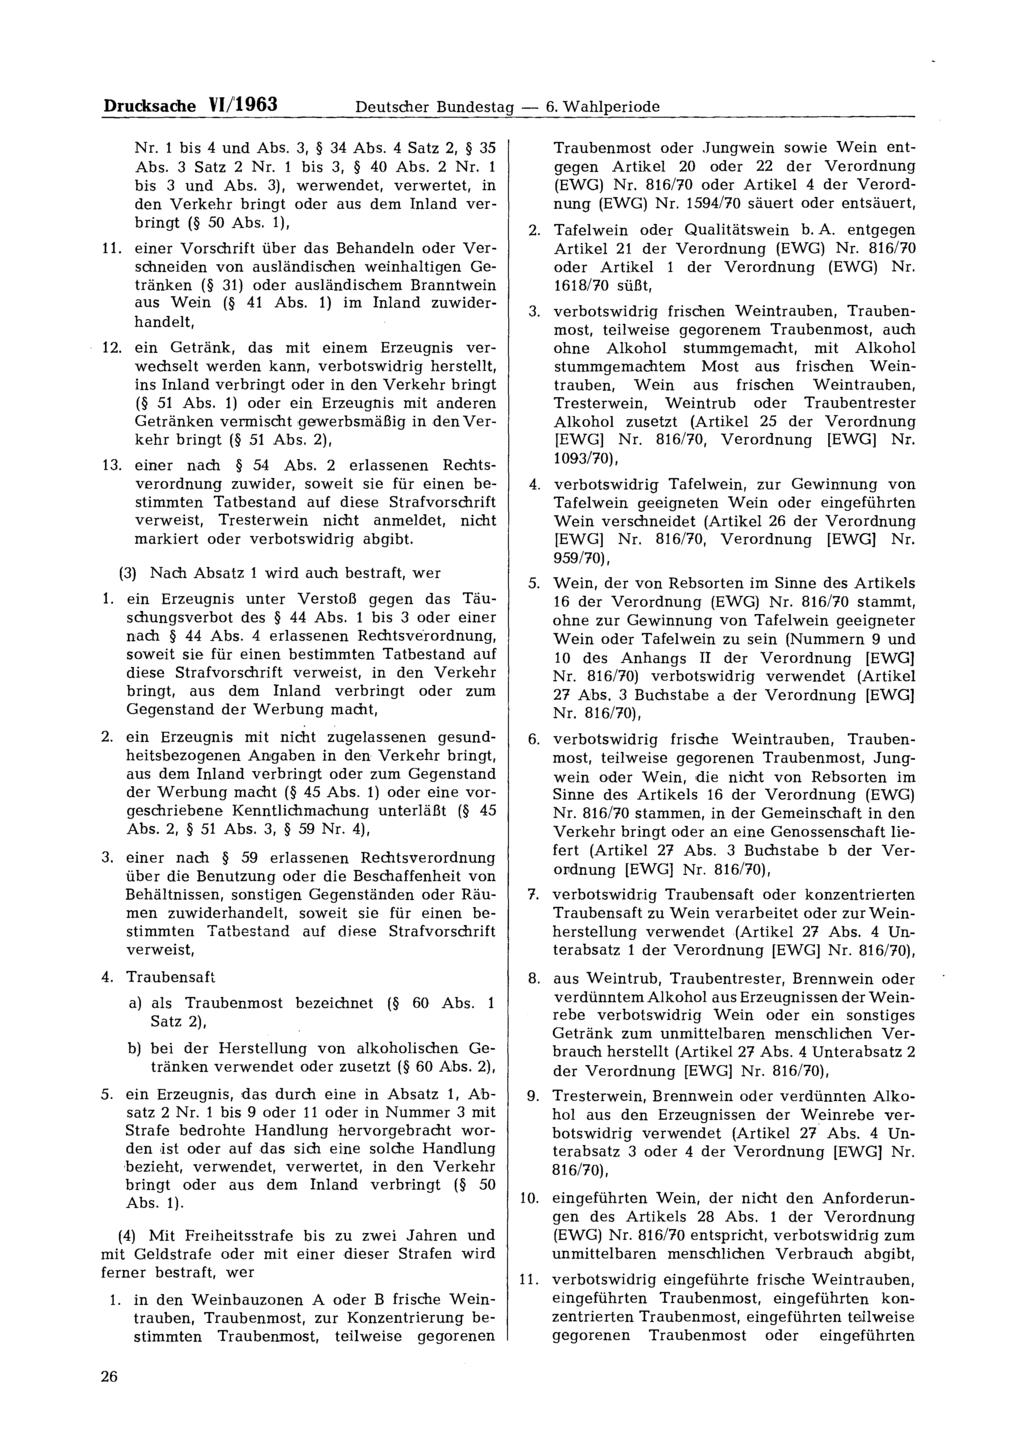 Drucksache VI/1963 Deutscher Bundestag 6. Wahlperiode Nr. 1 bis 4 und Abs. 3, 34 Abs. 4 Satz 2, 35 Abs. 3 Satz 2 Nr. 1 bis 3, 40 Abs. 2 Nr. 1 bis 3 und Abs.